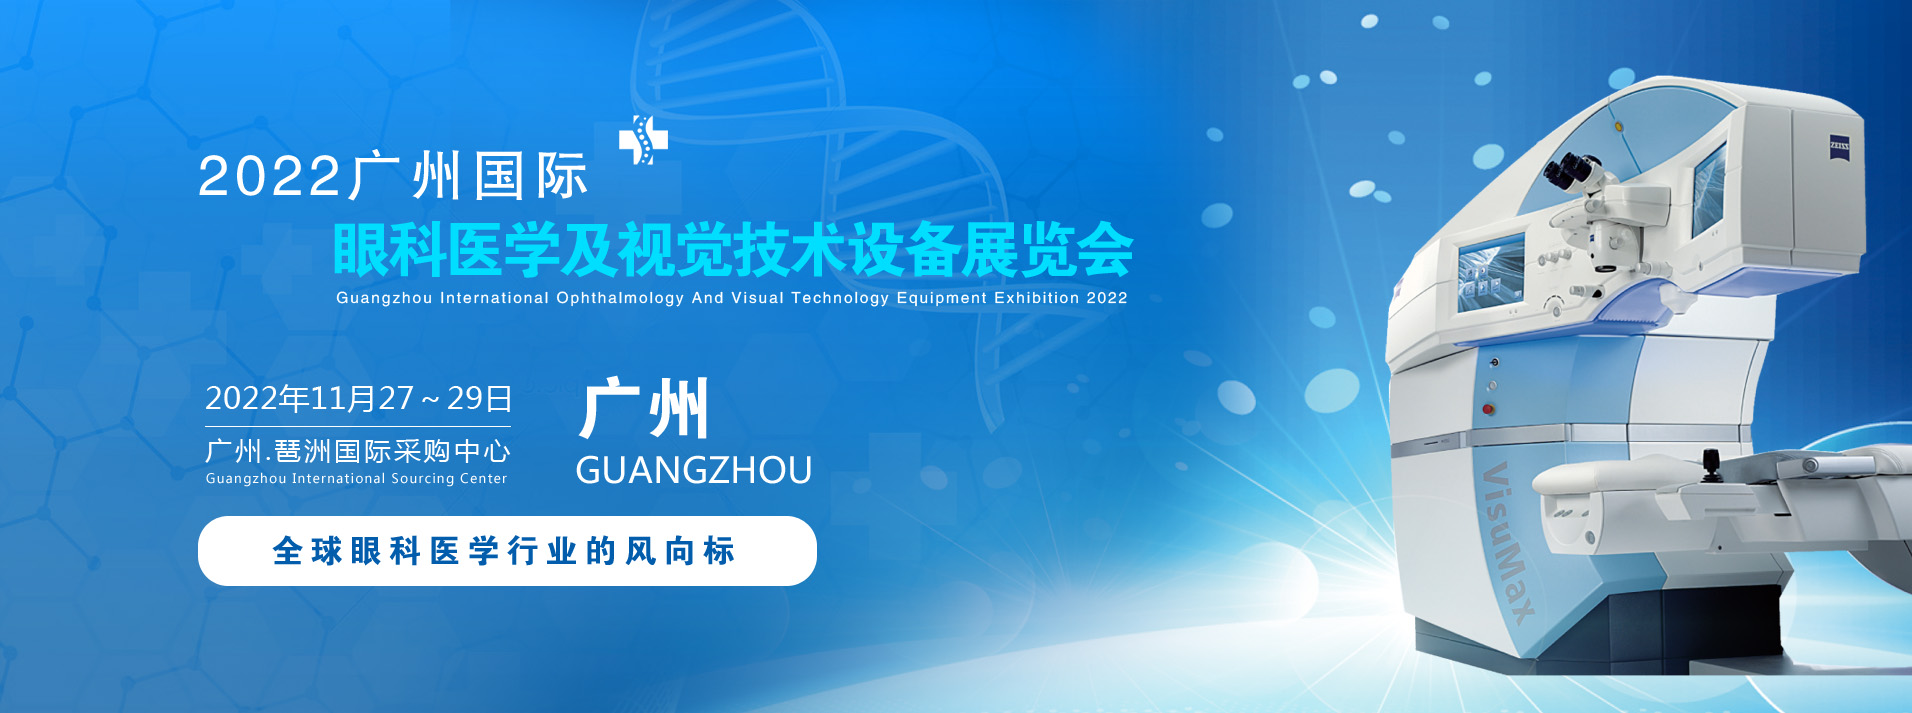 2022中国（广州）国际眼科医学及视觉技术设备展览会